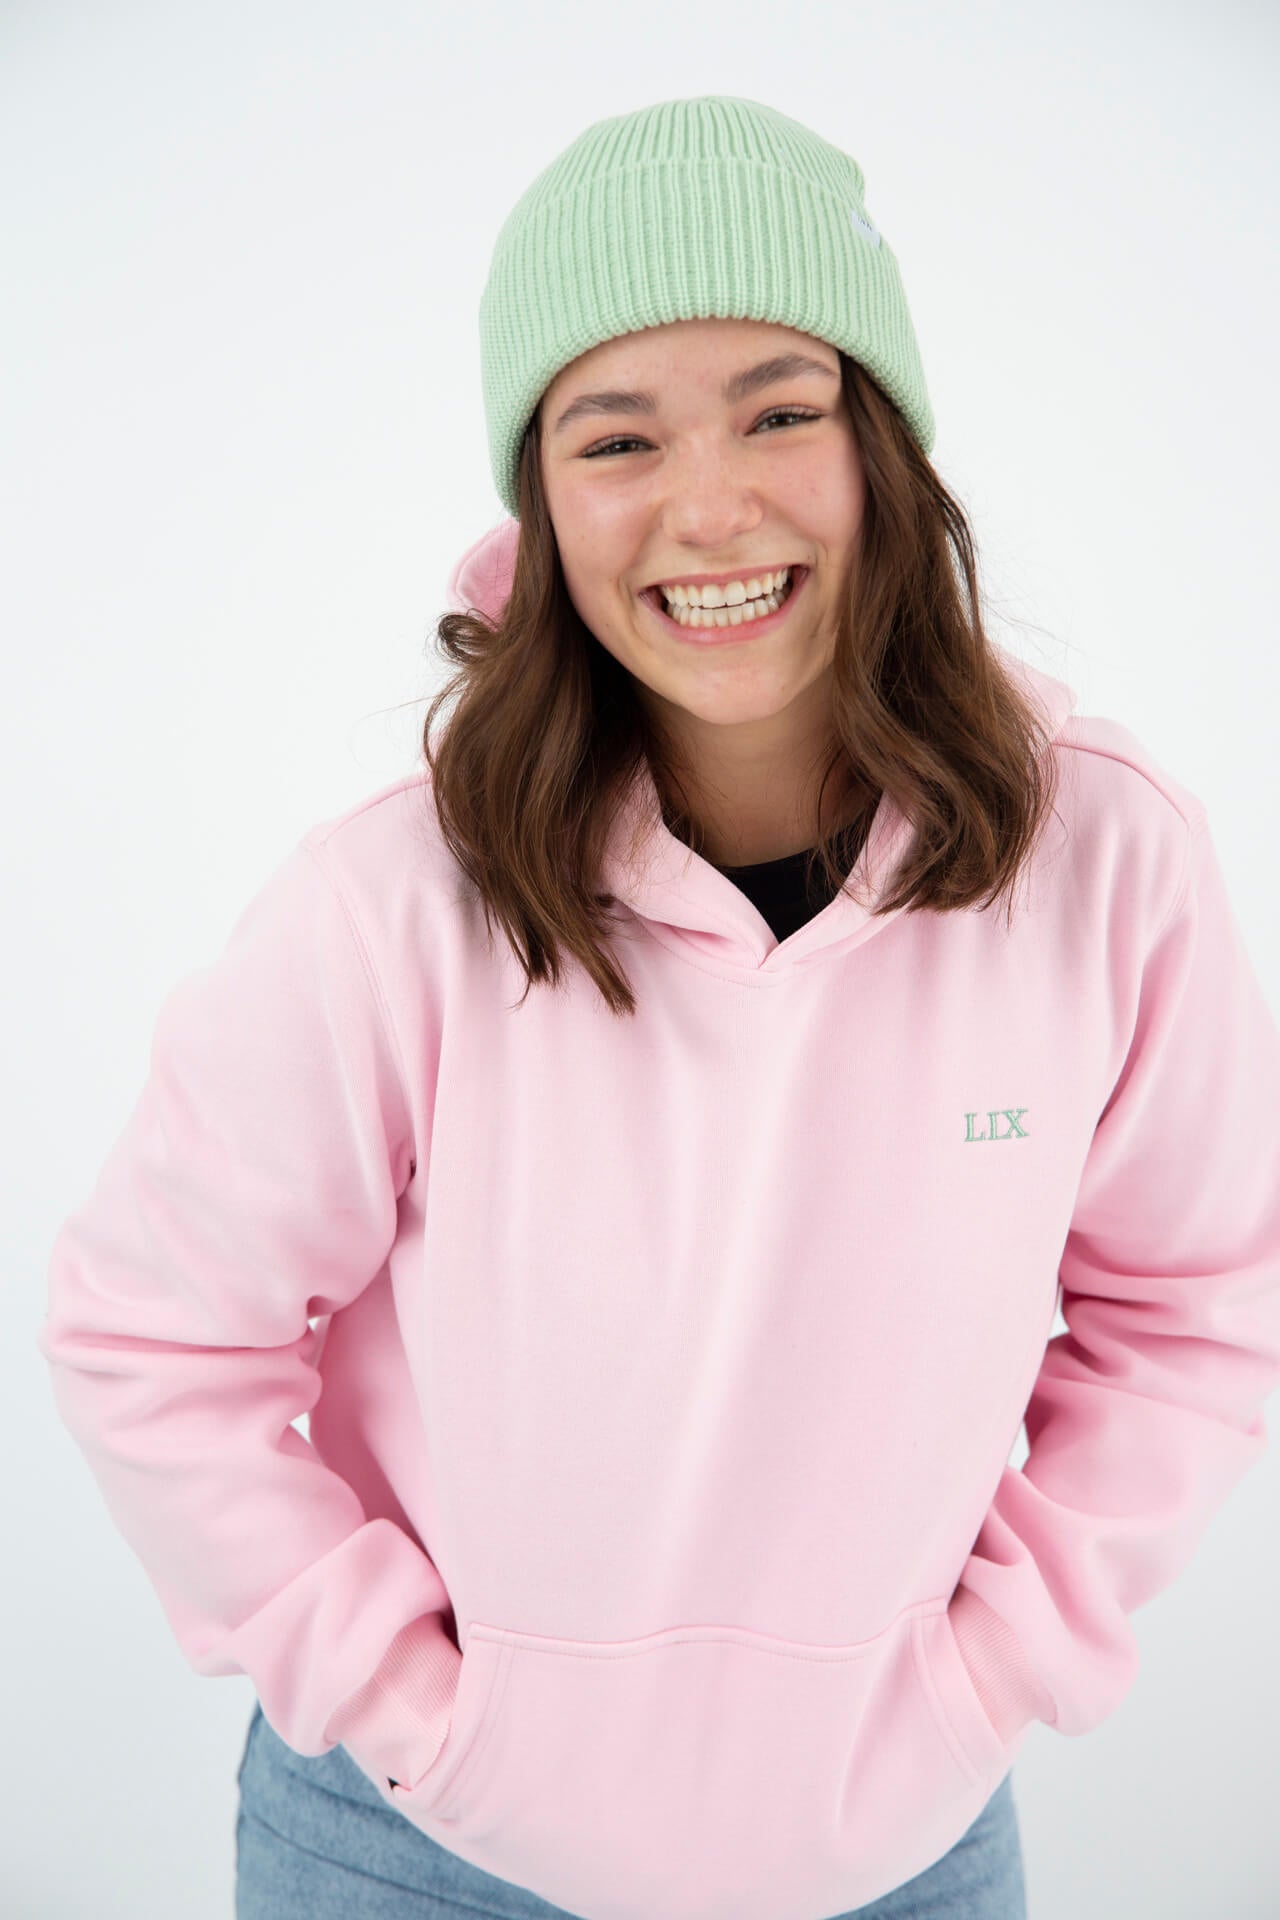 Lix design, entreprise québécoise, chandail a capuche de couleur rose pâle. Tuque en acrylique verte menthe.